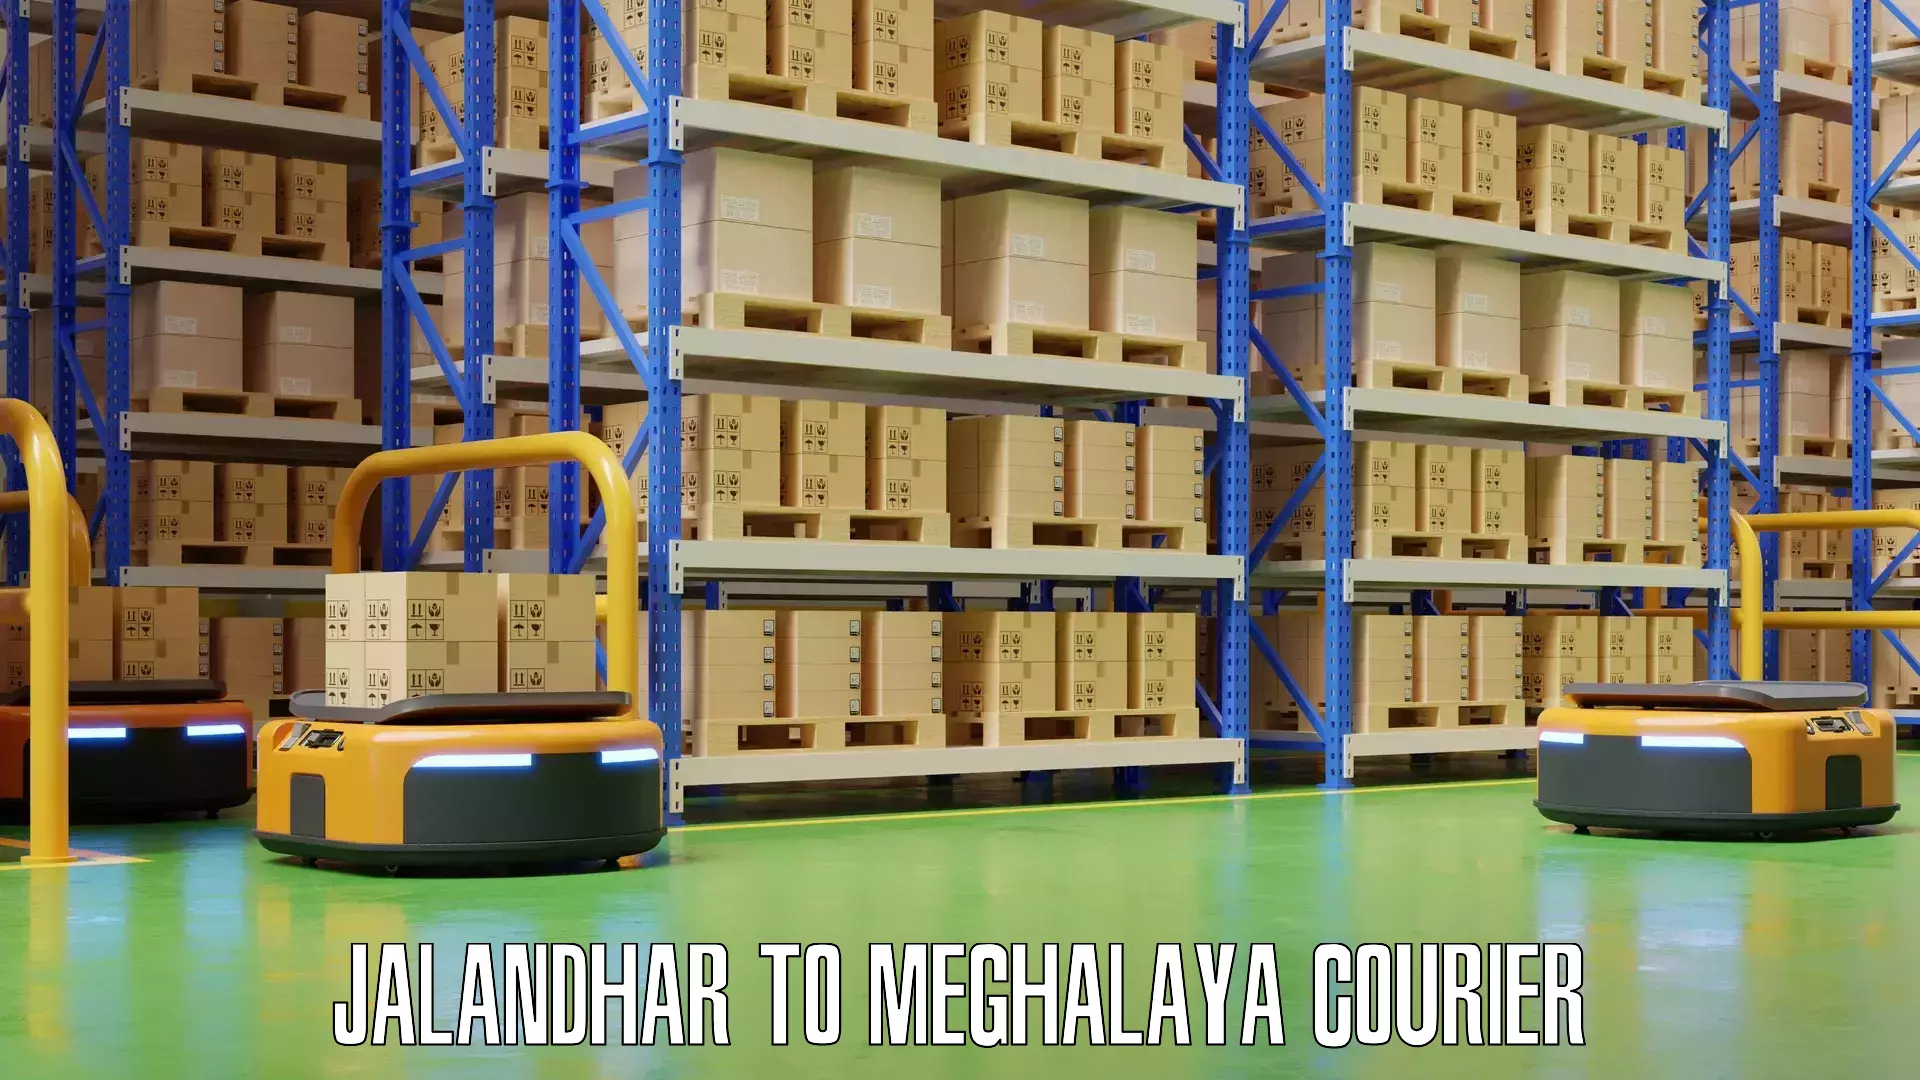 Baggage shipping experts Jalandhar to Meghalaya